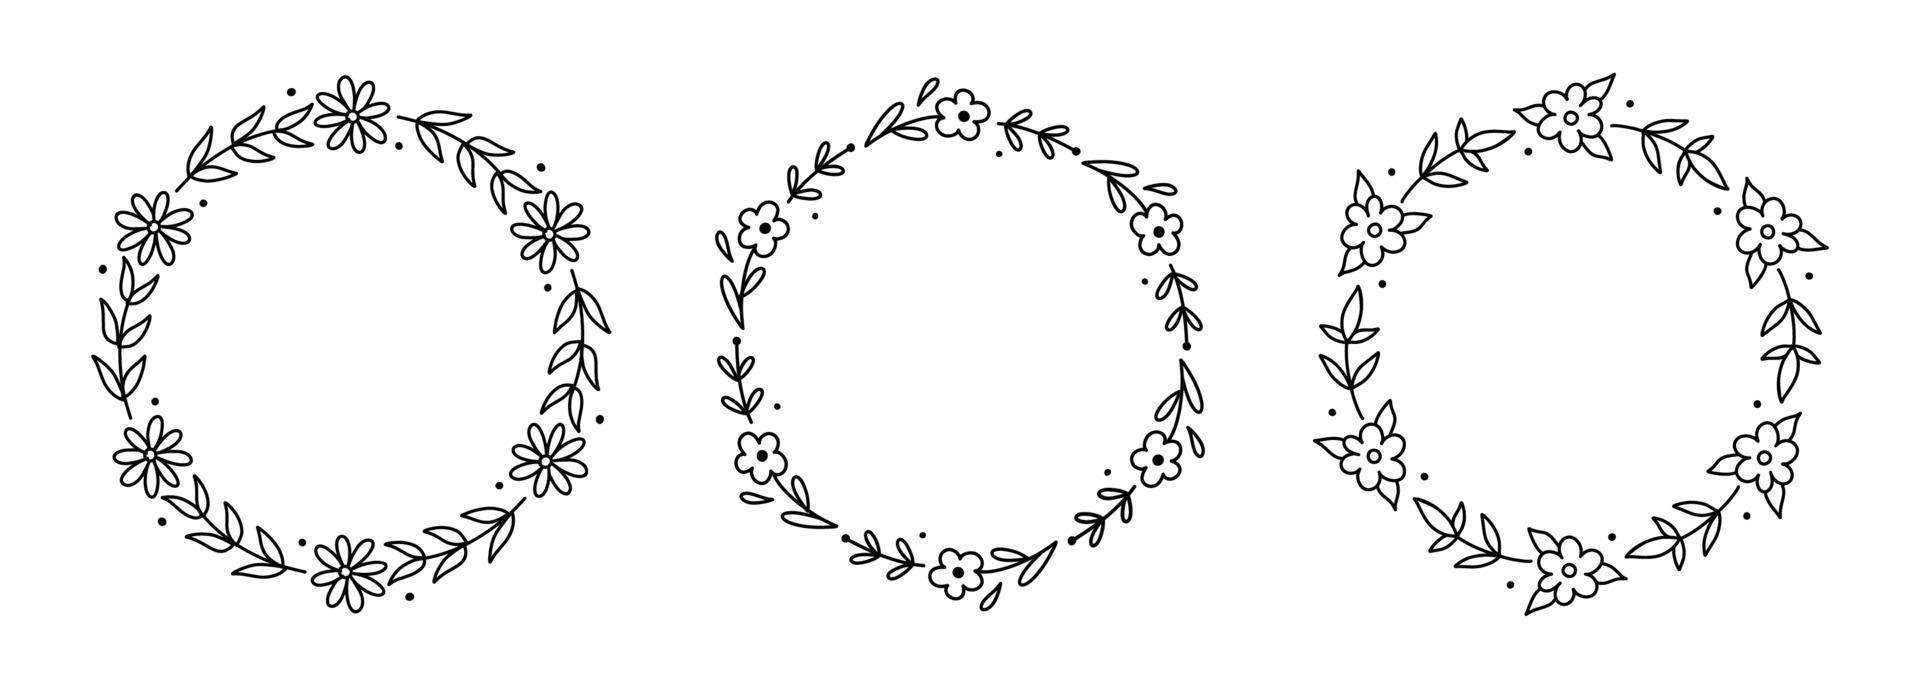 Reihe von Blumenkränzen isoliert auf weißem Hintergrund. runde rahmen mit blumen und blättern. handgezeichnete Vektorgrafik im Doodle-Stil. Perfekt für Karten, Einladungen, Dekorationen, Logos. vektor